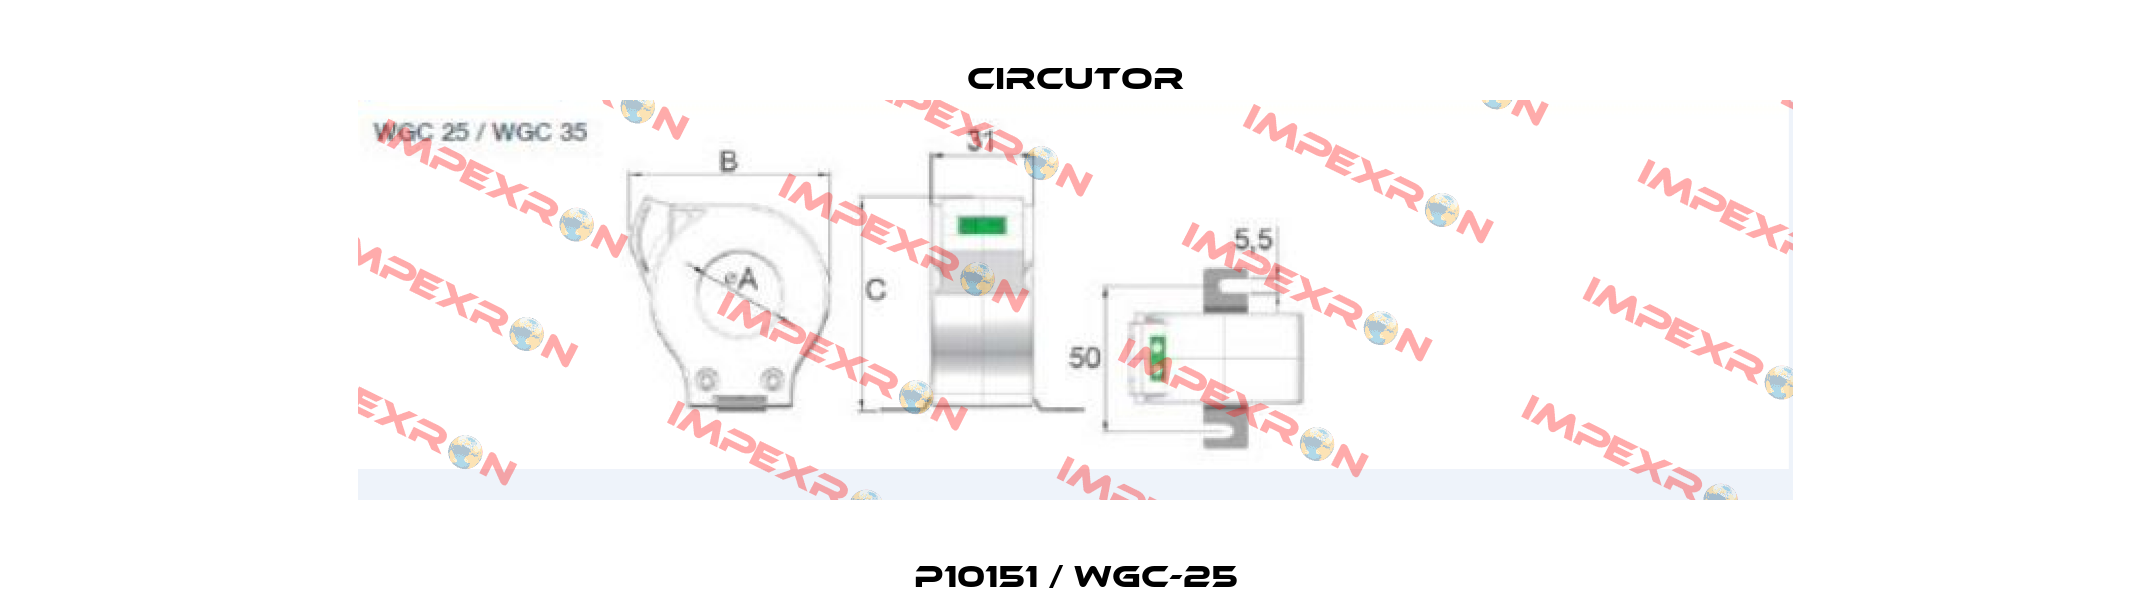 P10151 / WGC-25 Circutor